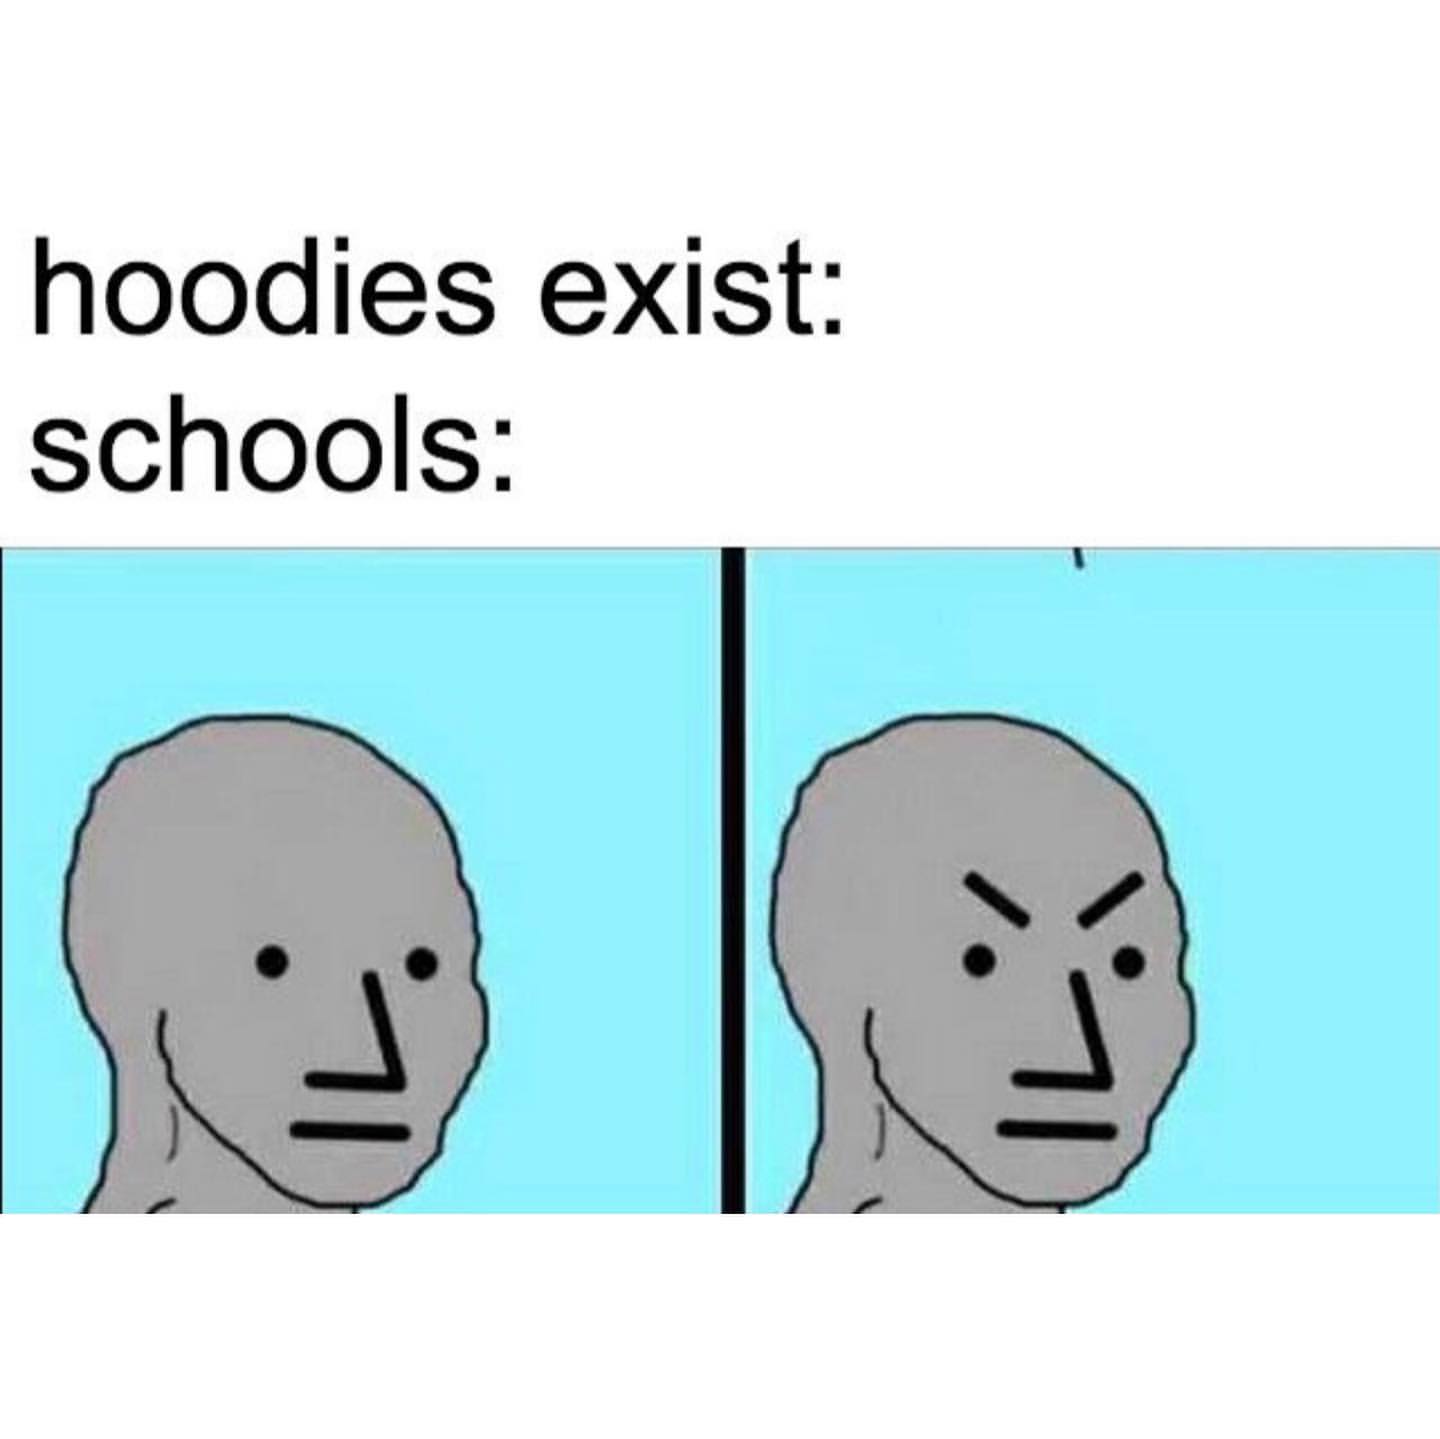 Hoodies exist: Schools: